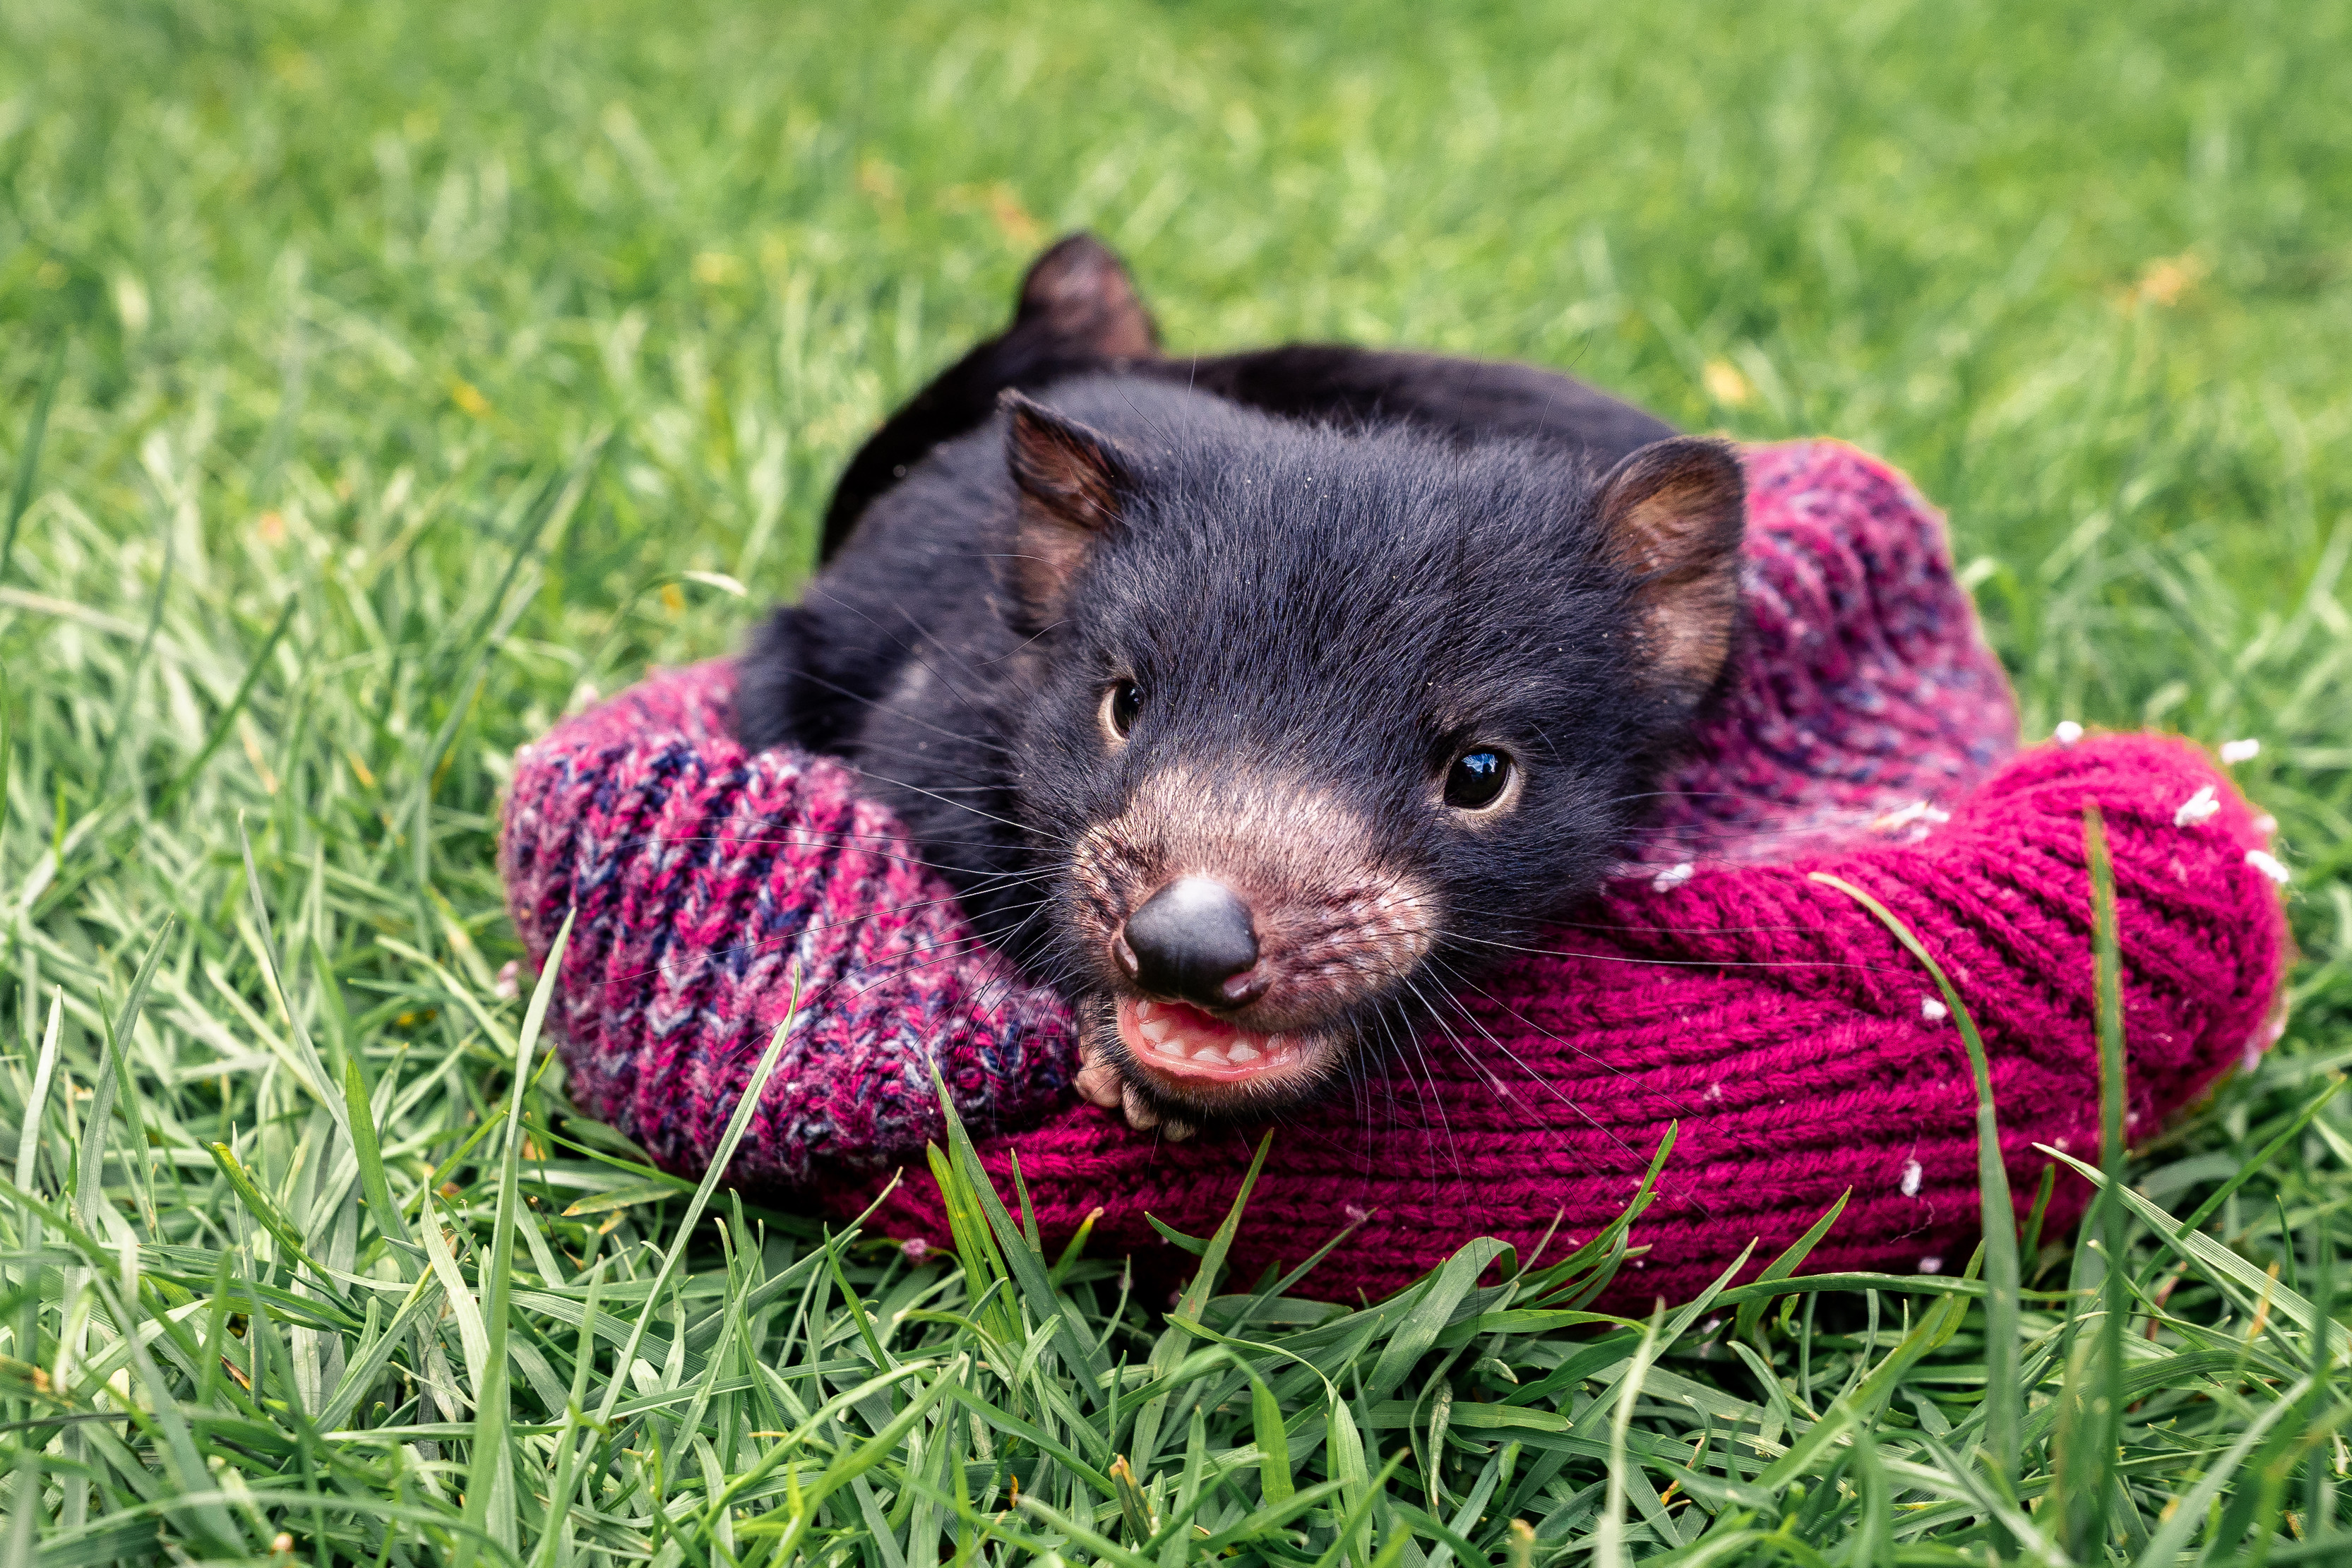 Tasmanian devil joey